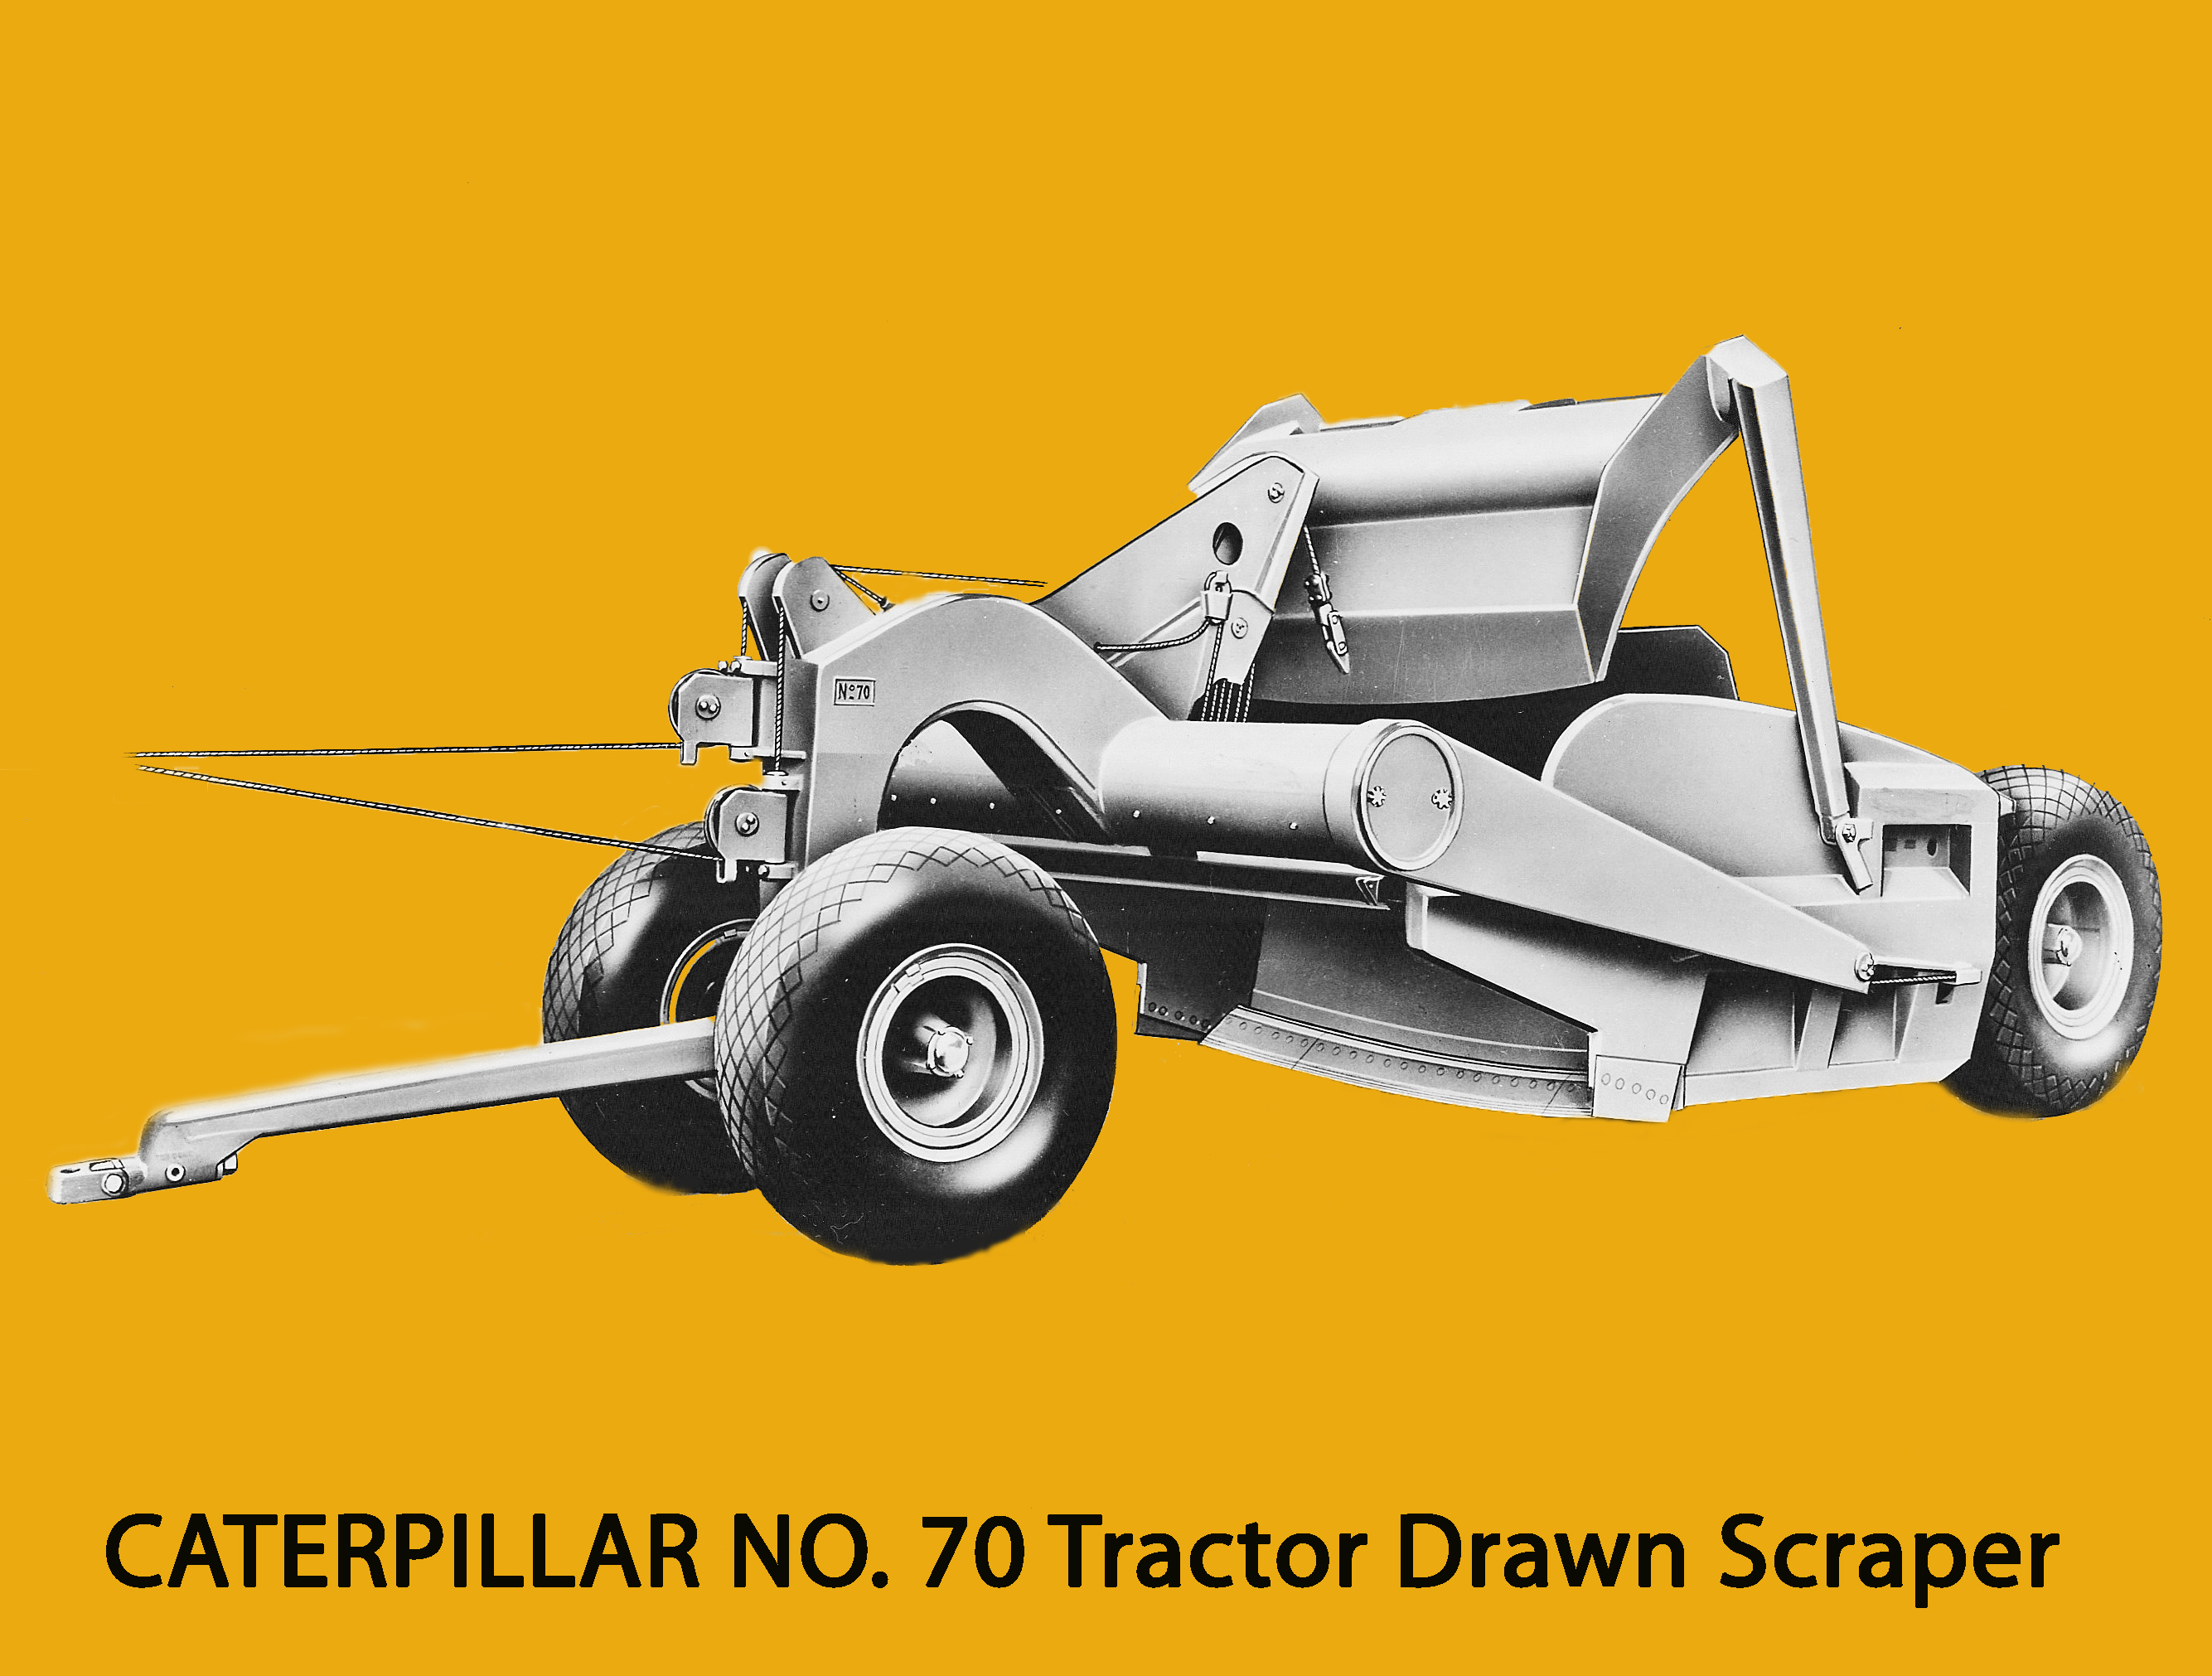 Caterpillar No. 70 towed scraper. Edgar Browning Image